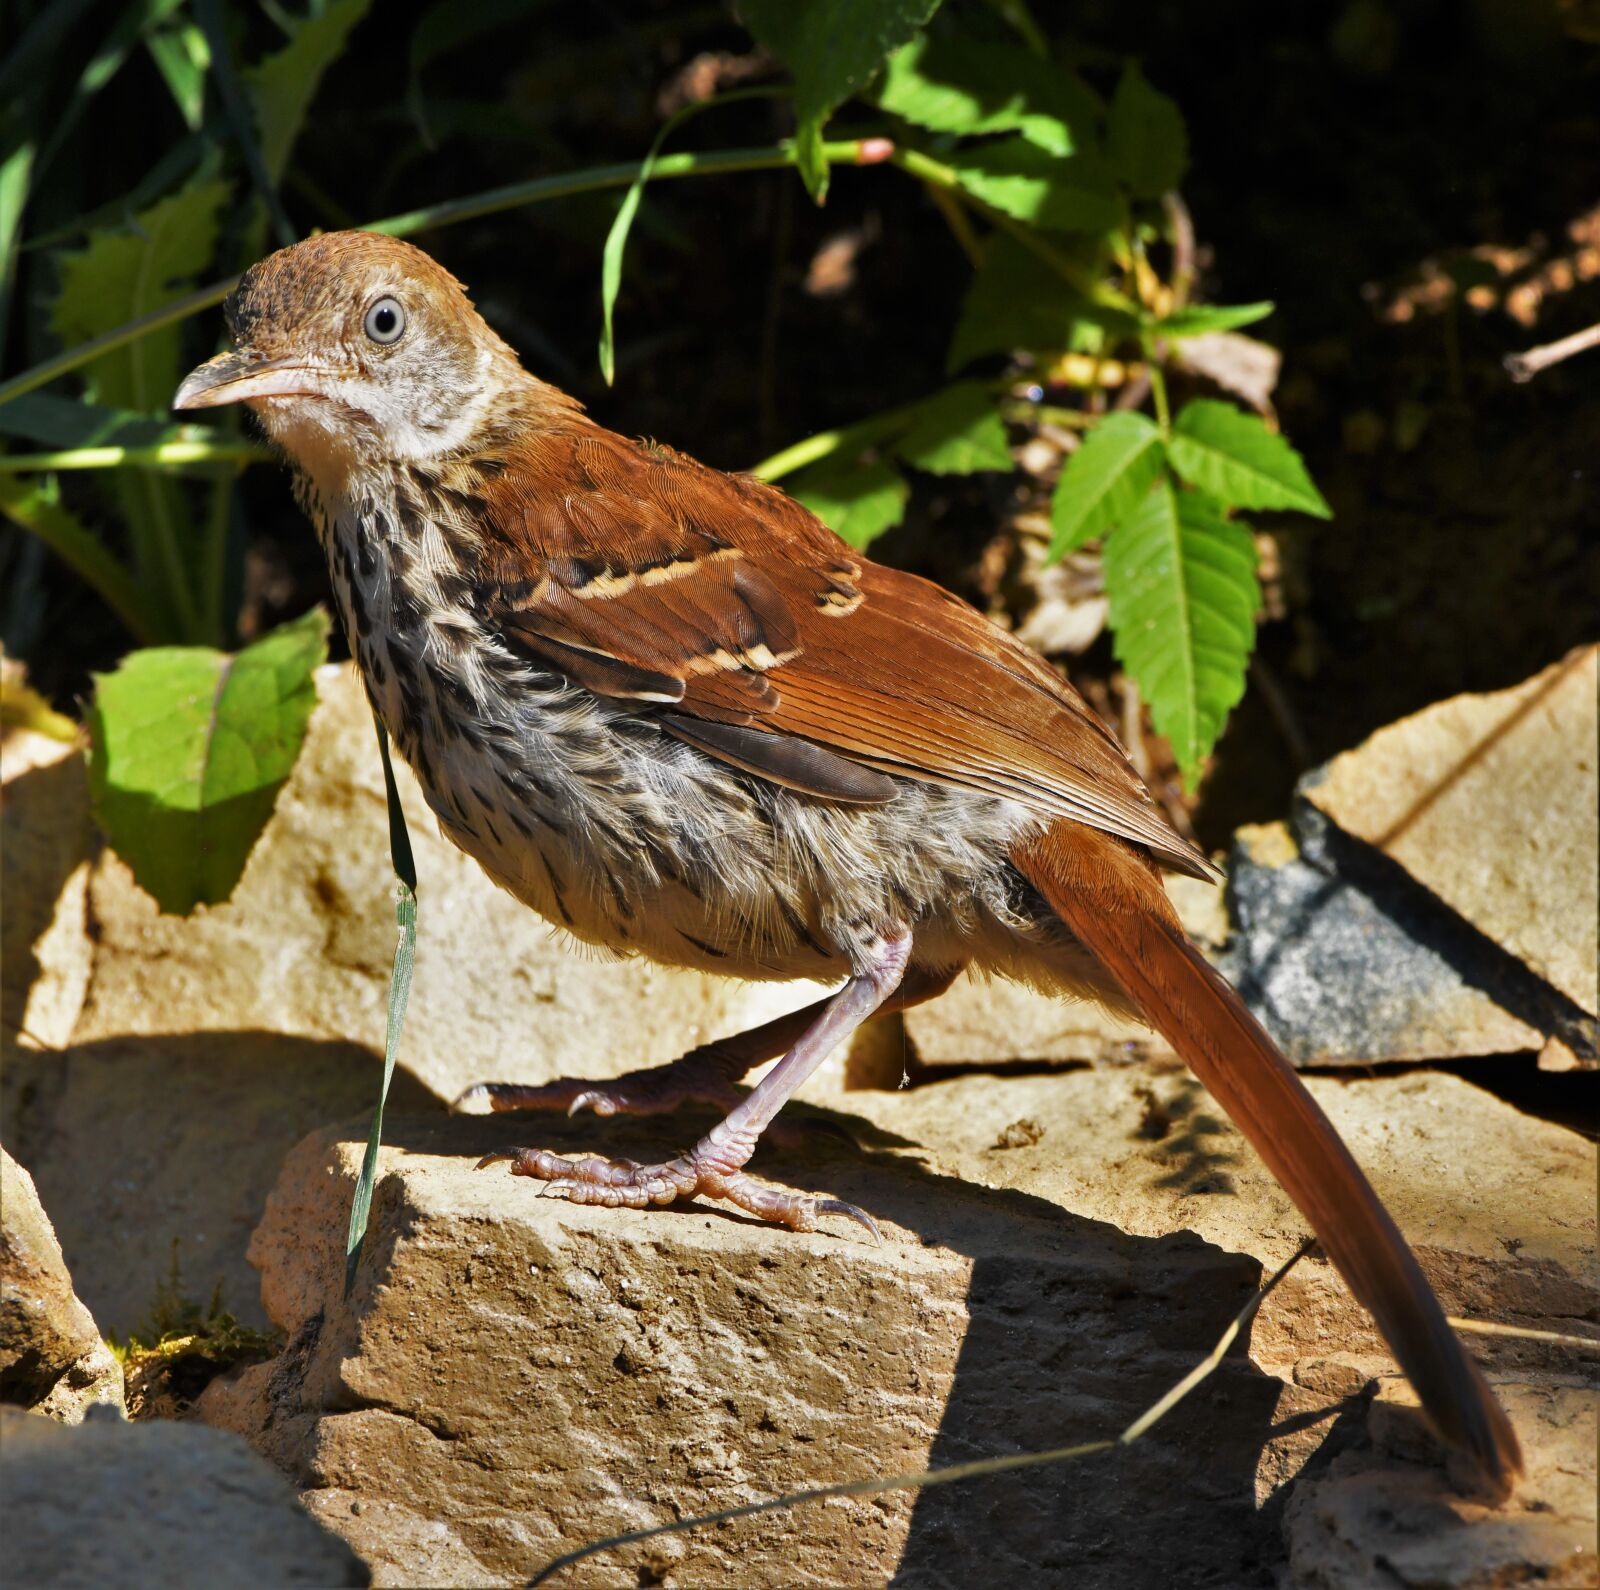 Nikon D850 sample photo. Bird, feathers, brown photography